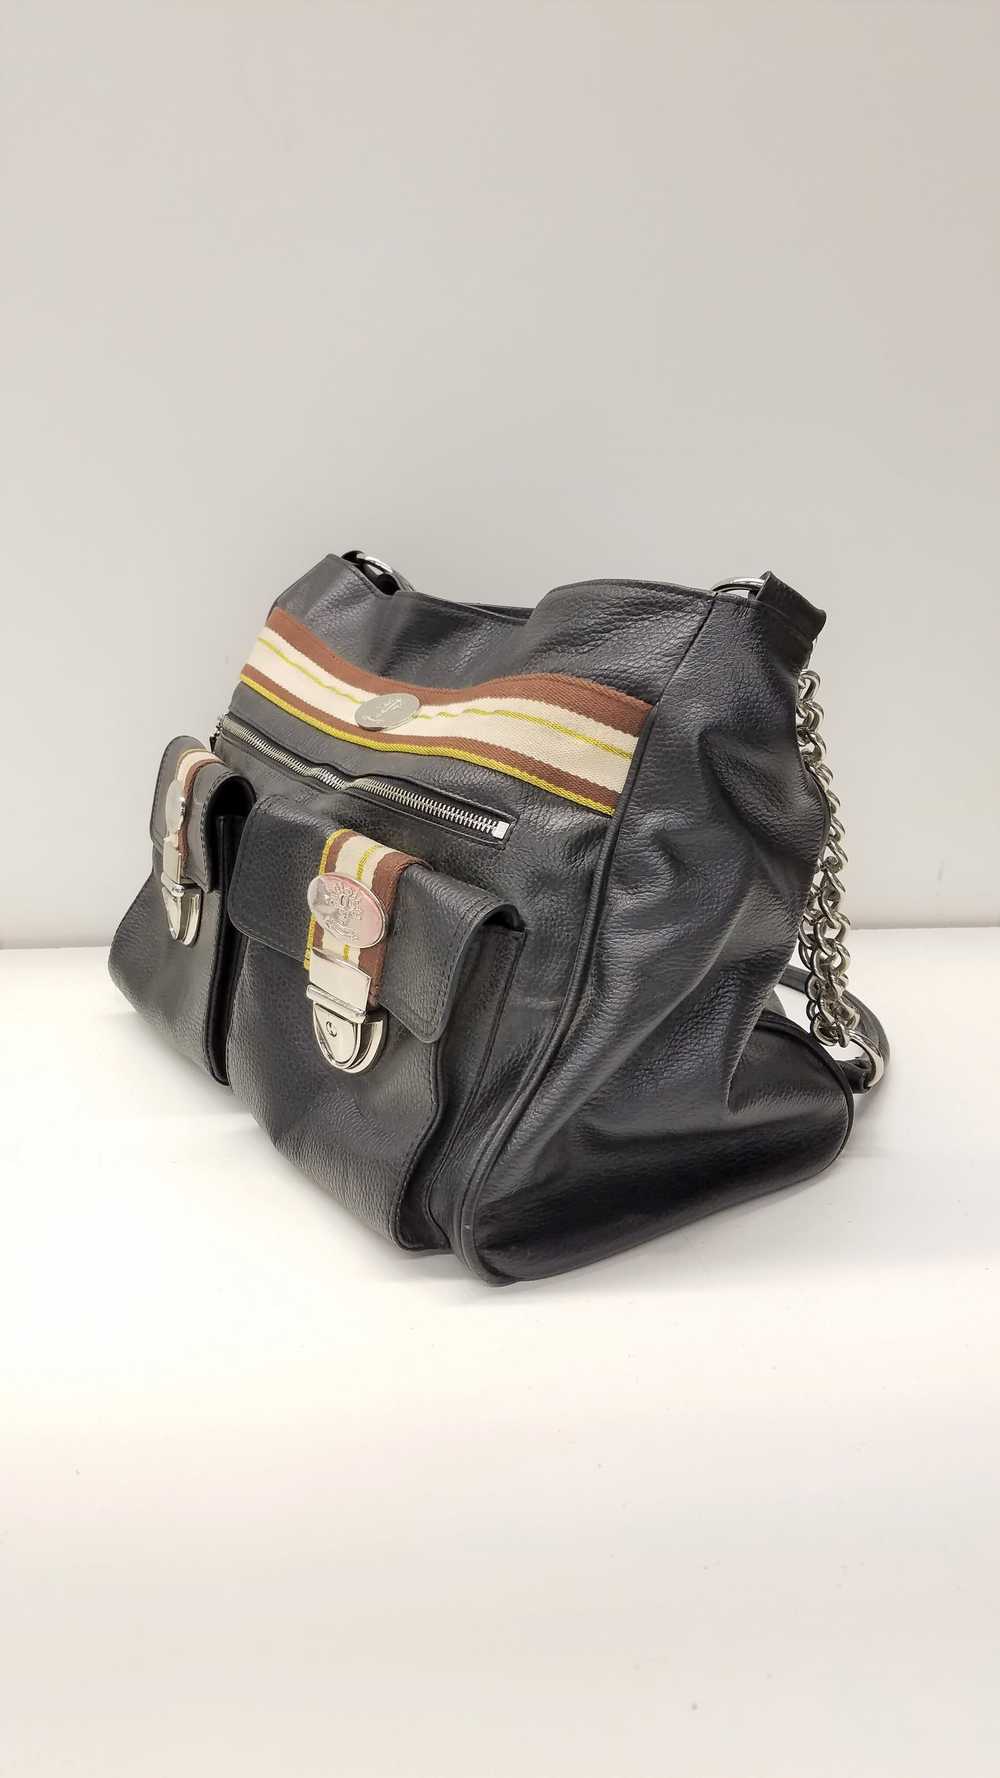 Christine Price Leather Pebbled Shoulder Bag Black - image 7